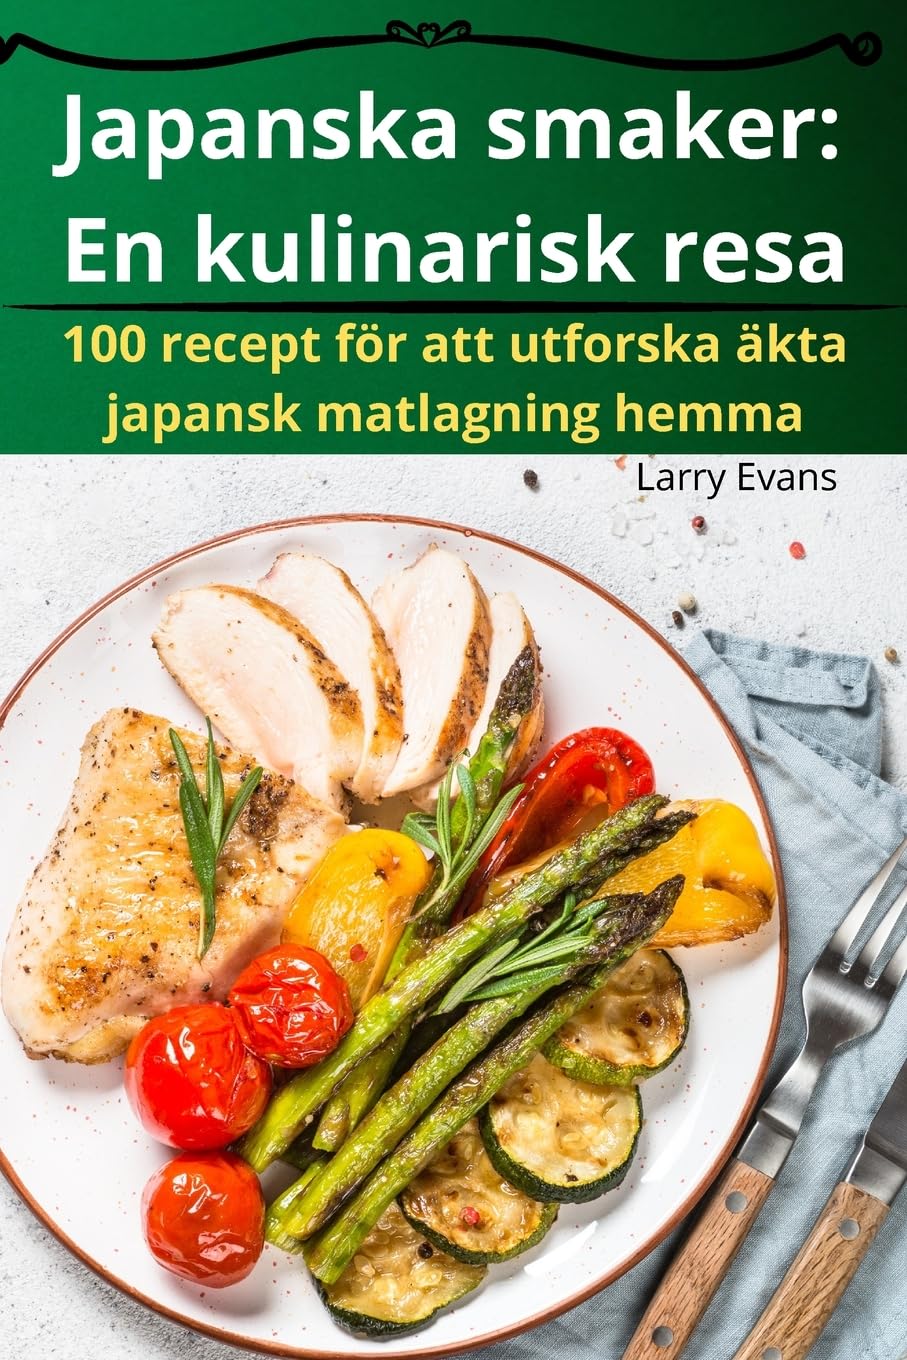 Japanska smaker: En kulinarisk resa (Swedish Edition)